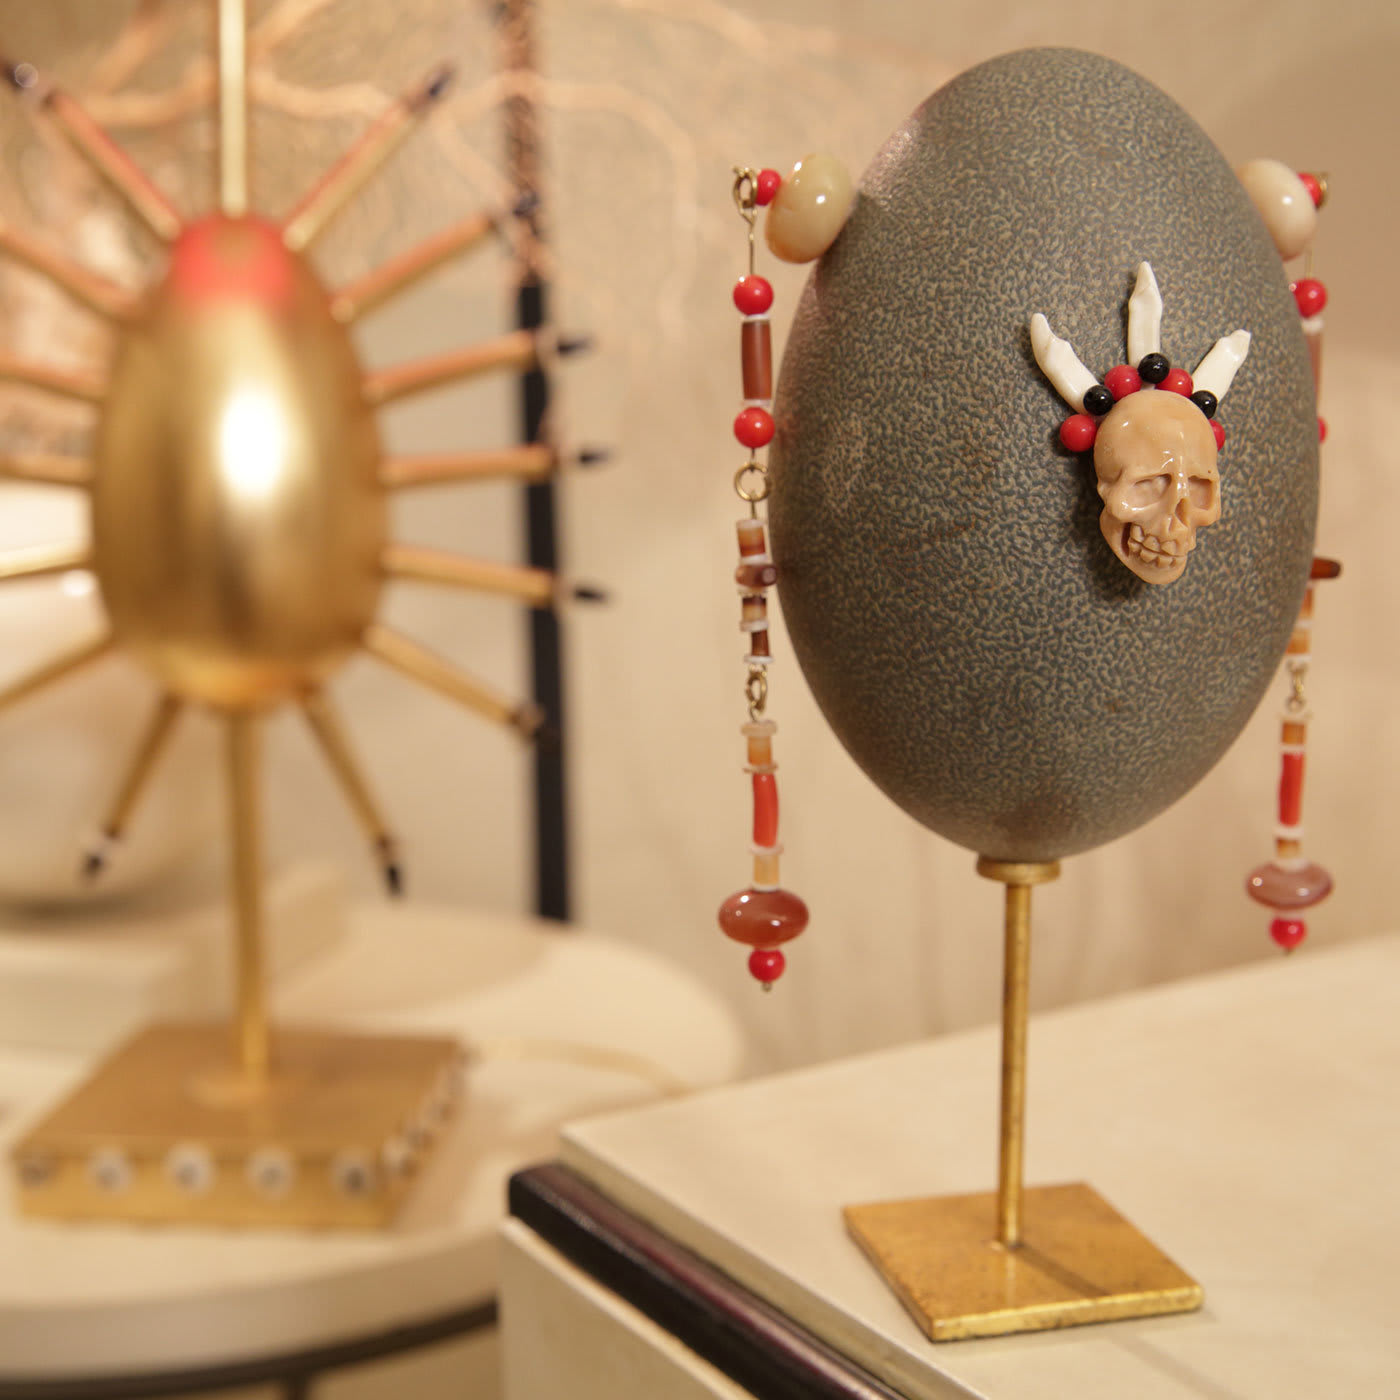 Shaman Egg Small Sculpture - Mario Bottiglieri